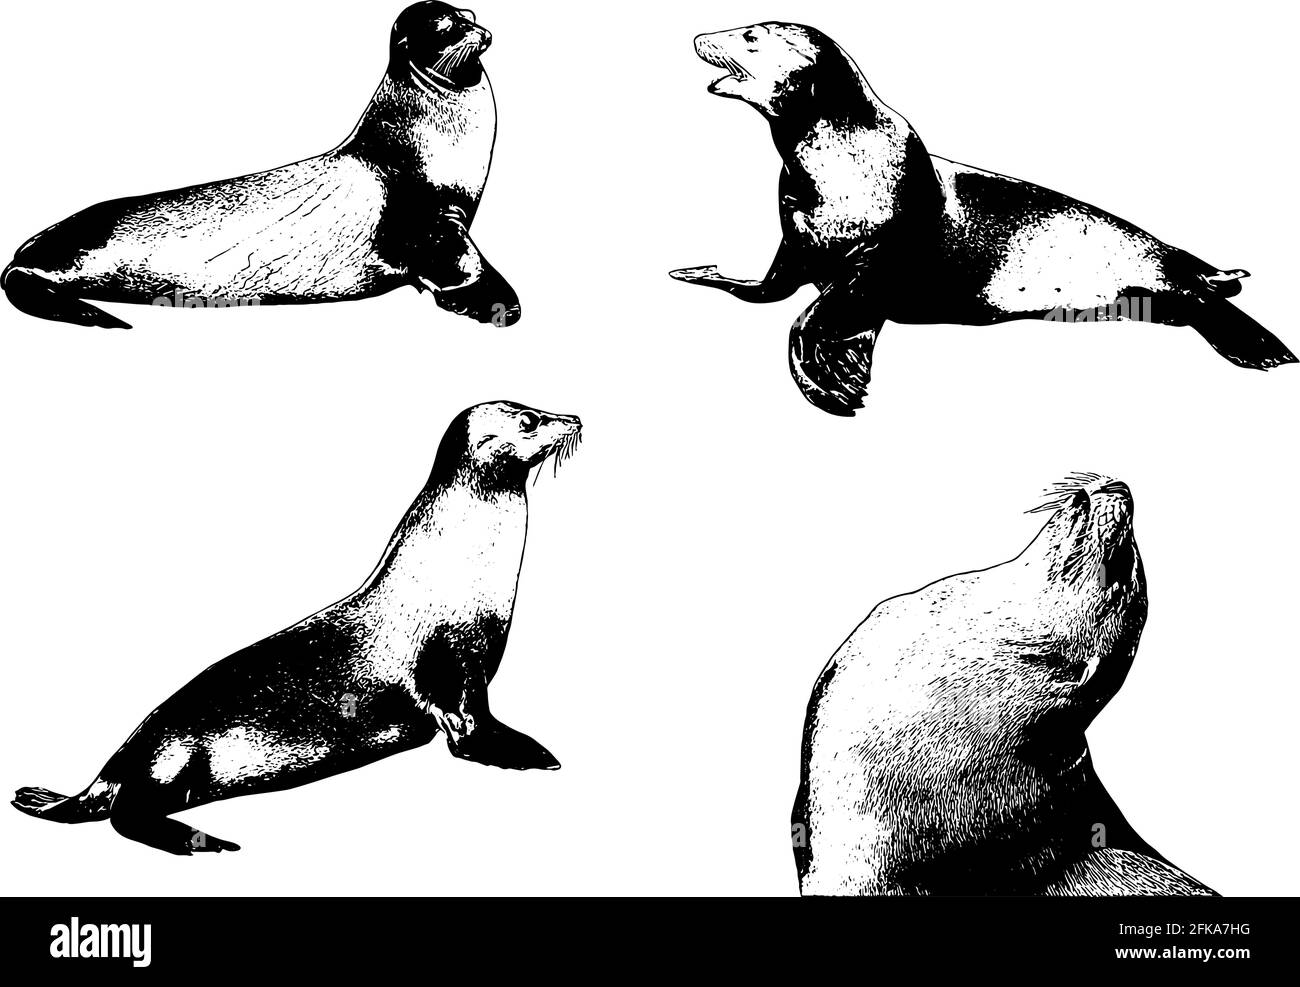 Sea Lion Set realistische Vektor-Illustration in schwarz auf weiß Hintergrund Stock Vektor